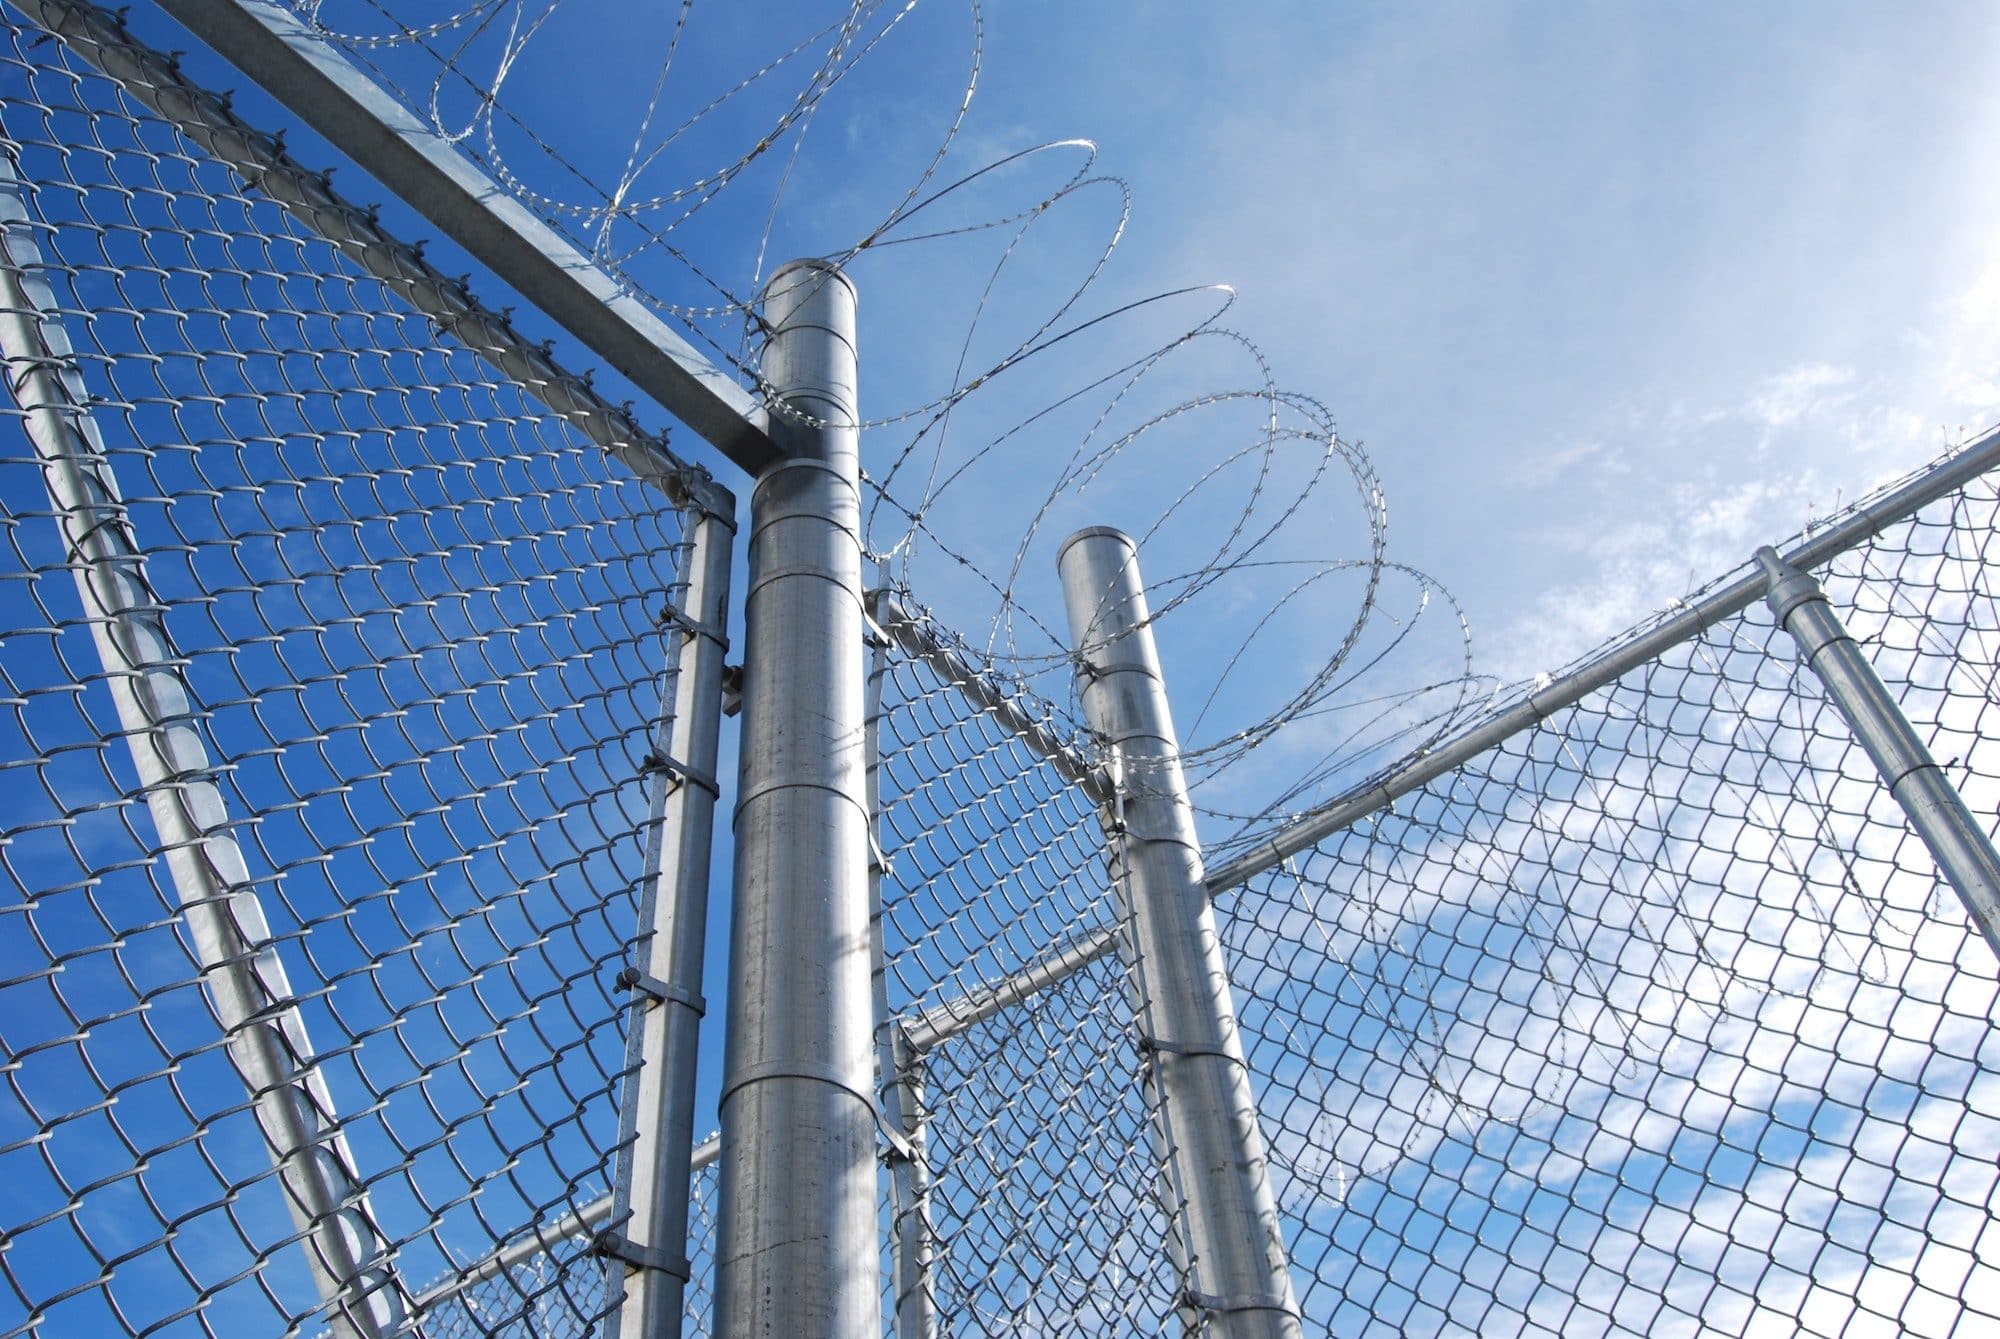 Parloir en prison : « une bouffée d’oxygène courte et douloureuse »